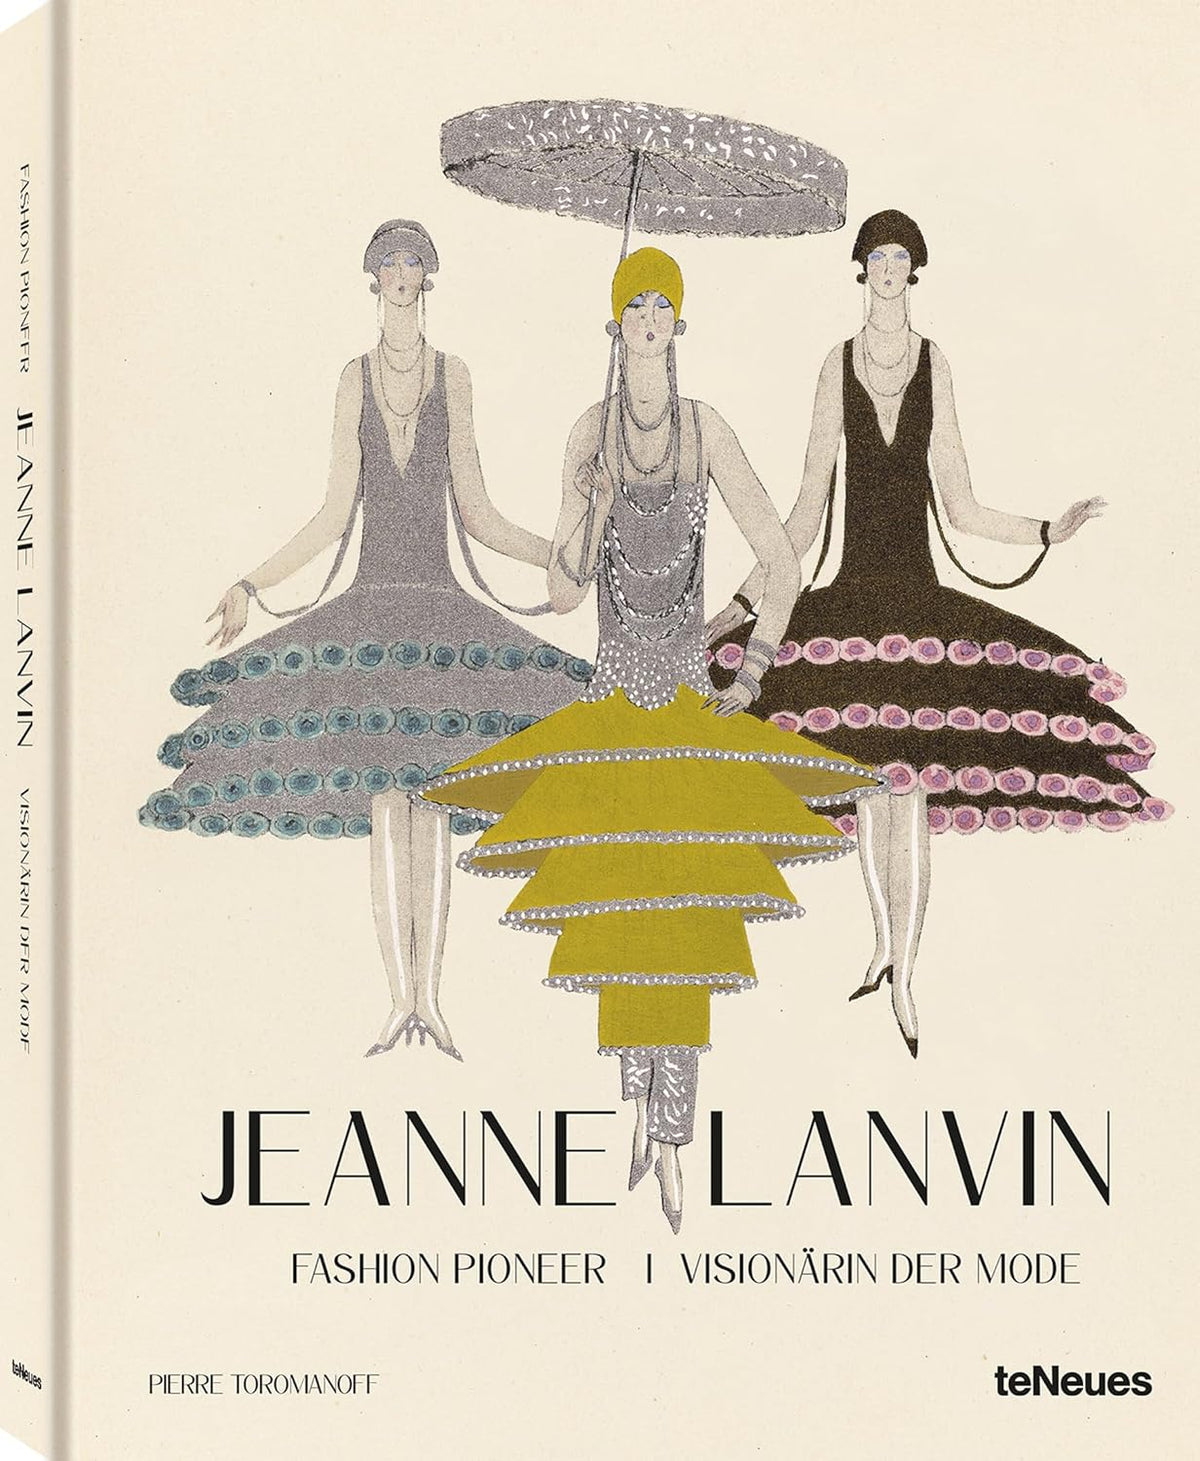 Jeanne Lanvin: Fashion Pioneer